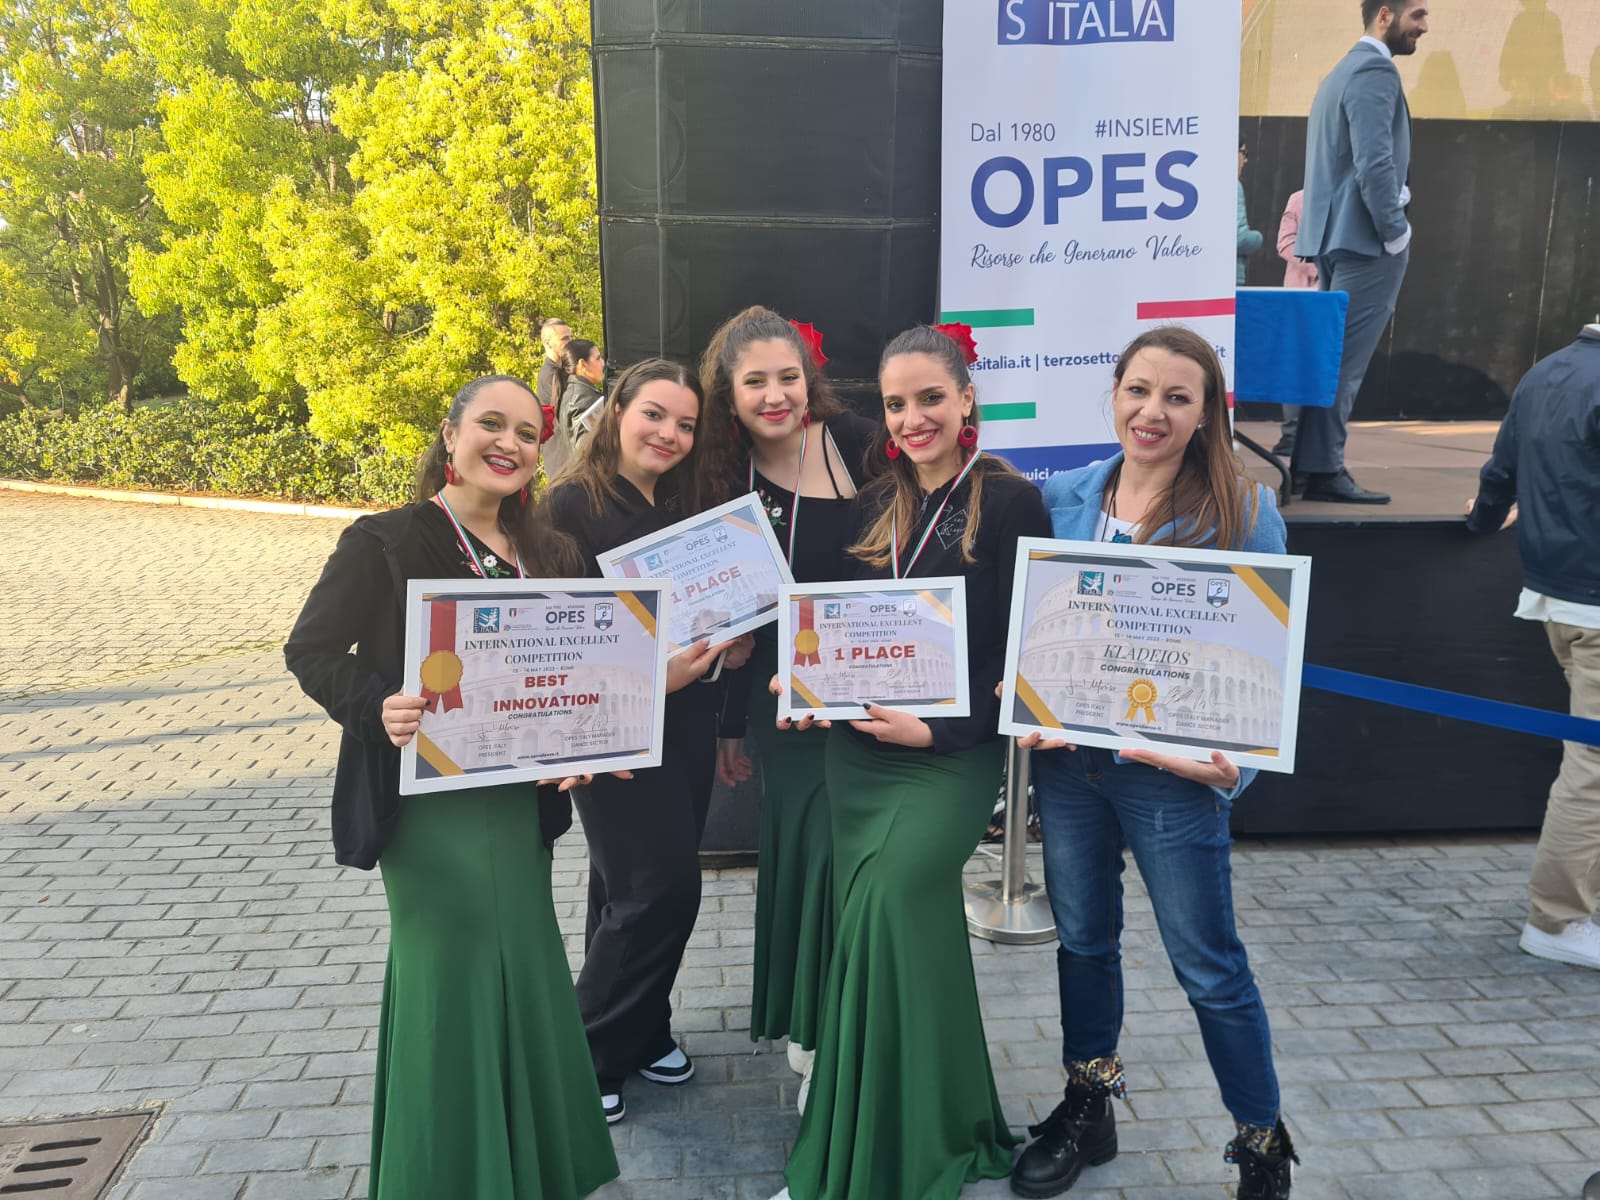 Le danzatrici catanesi della Kladeios conquistano il primo posto all’International Excellent Competition Opes Danza